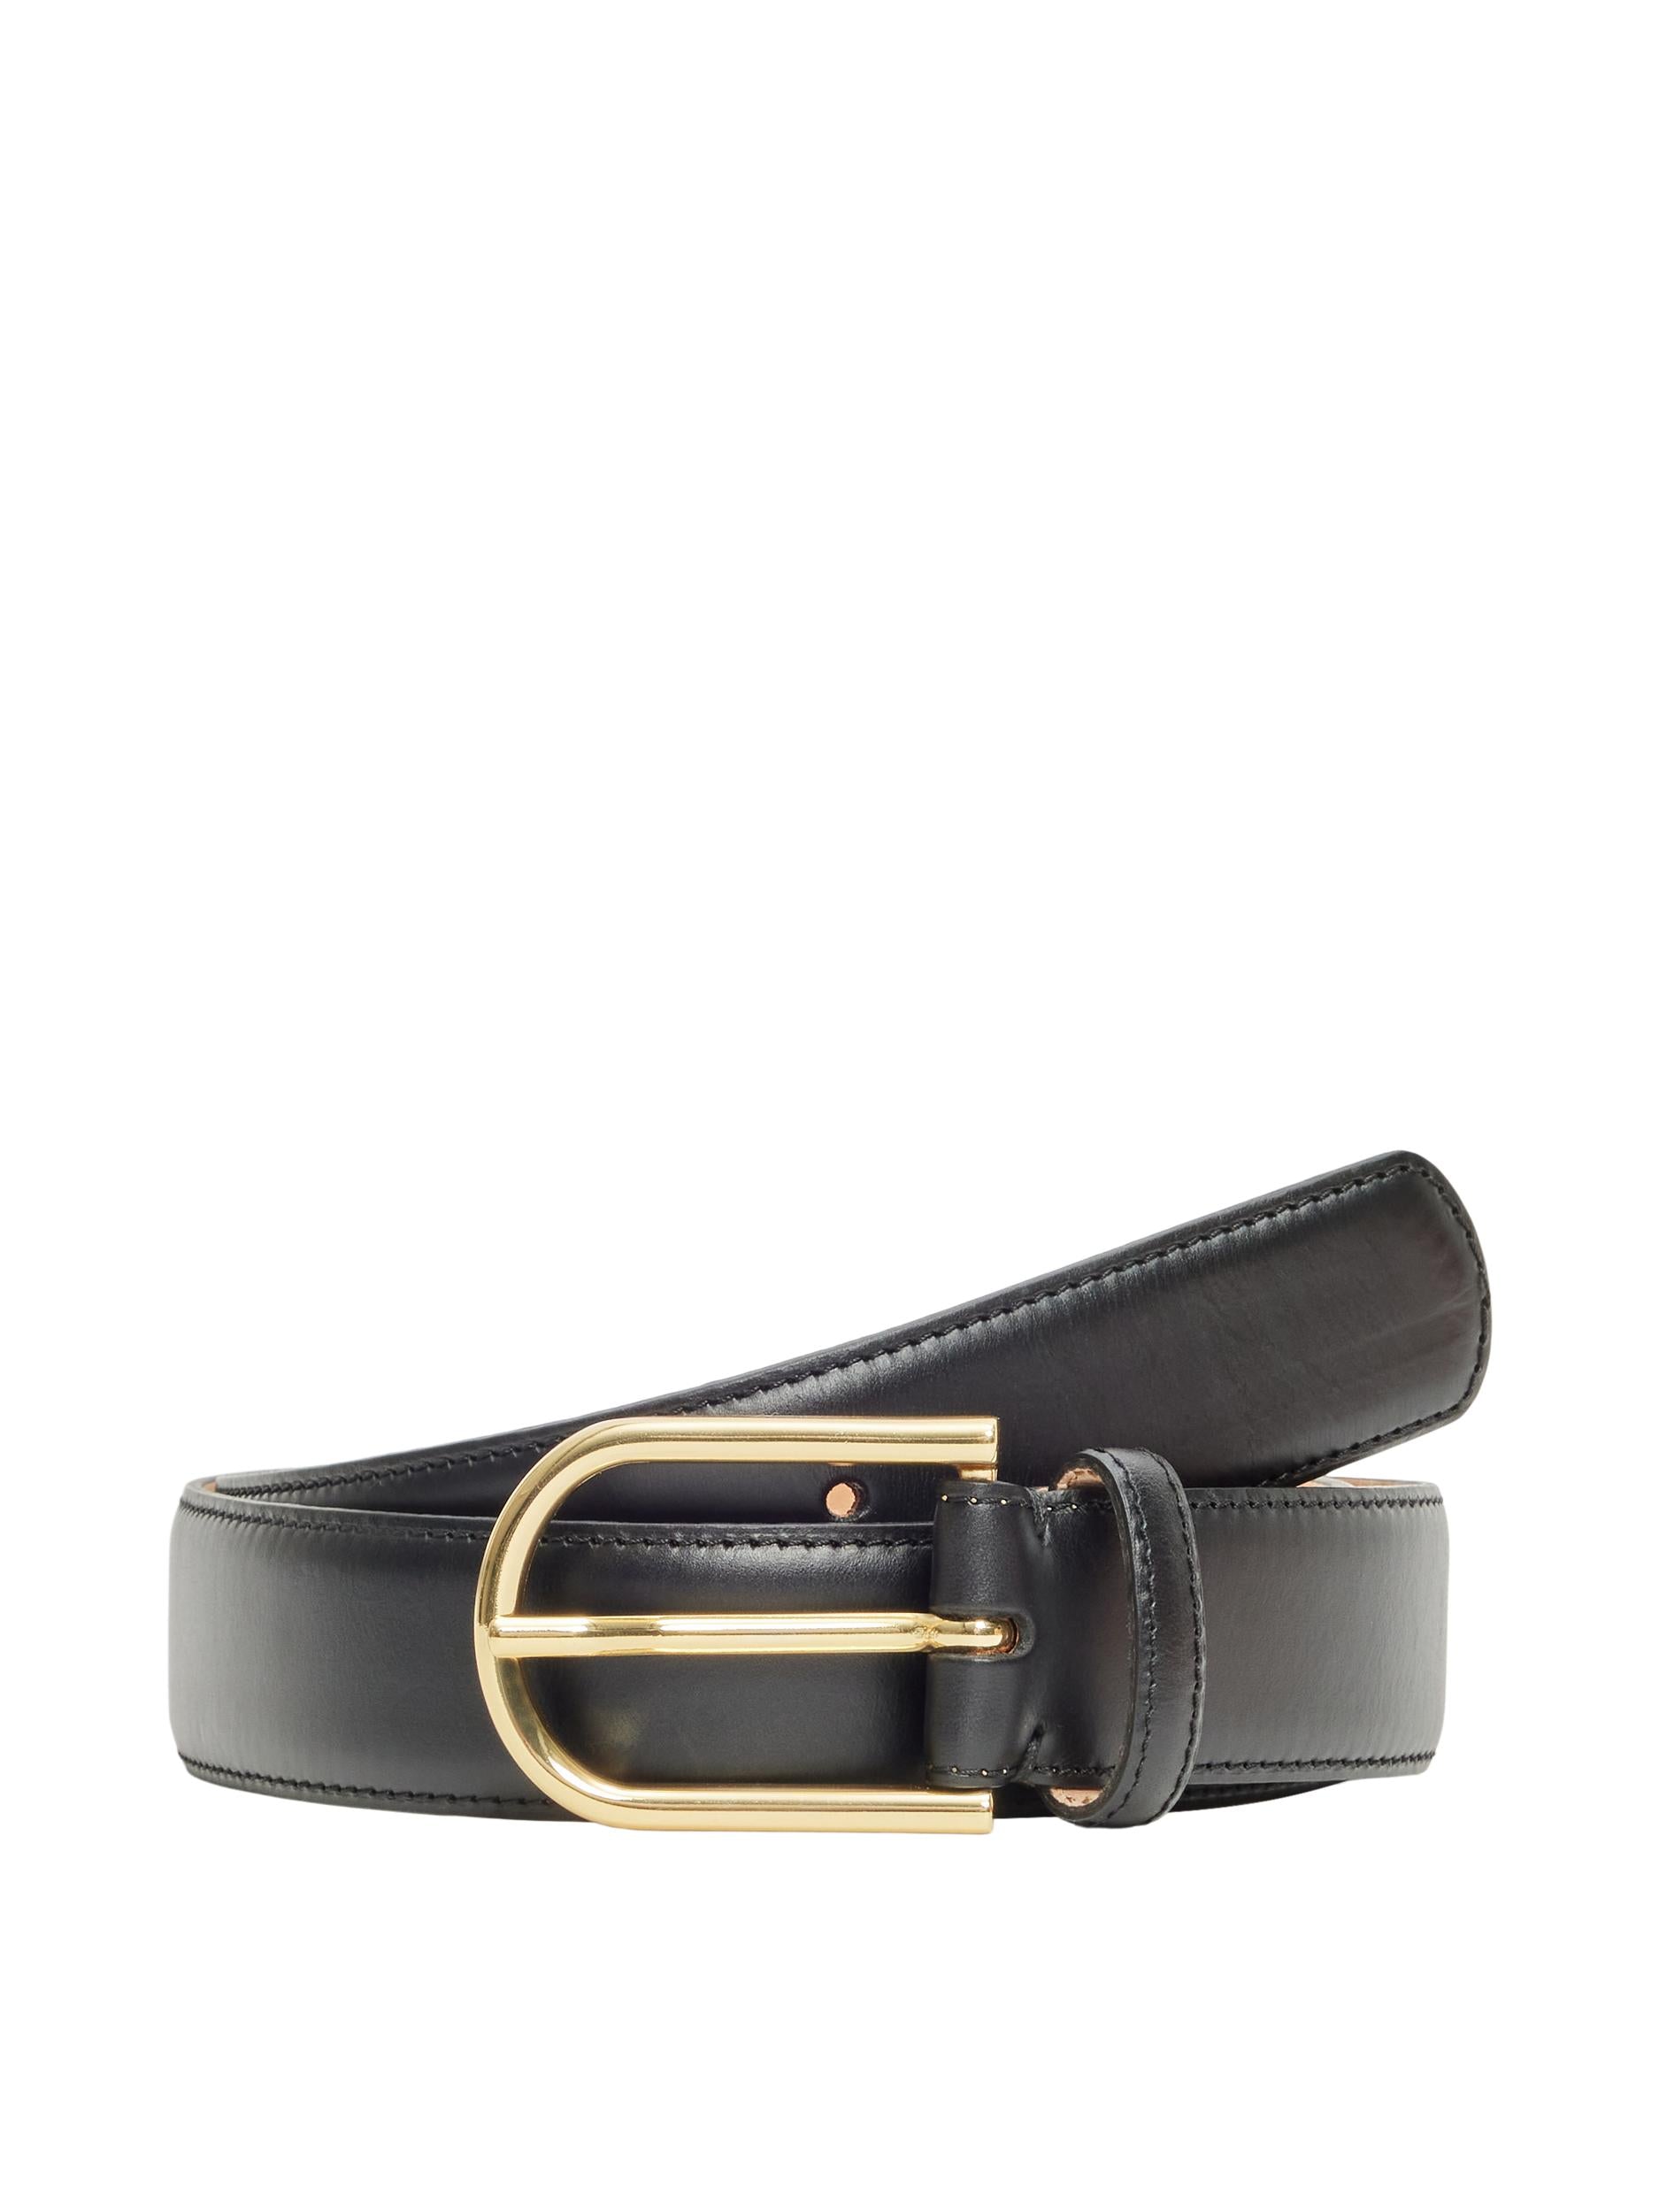 Selected Femme "Ellen" Leather Belt